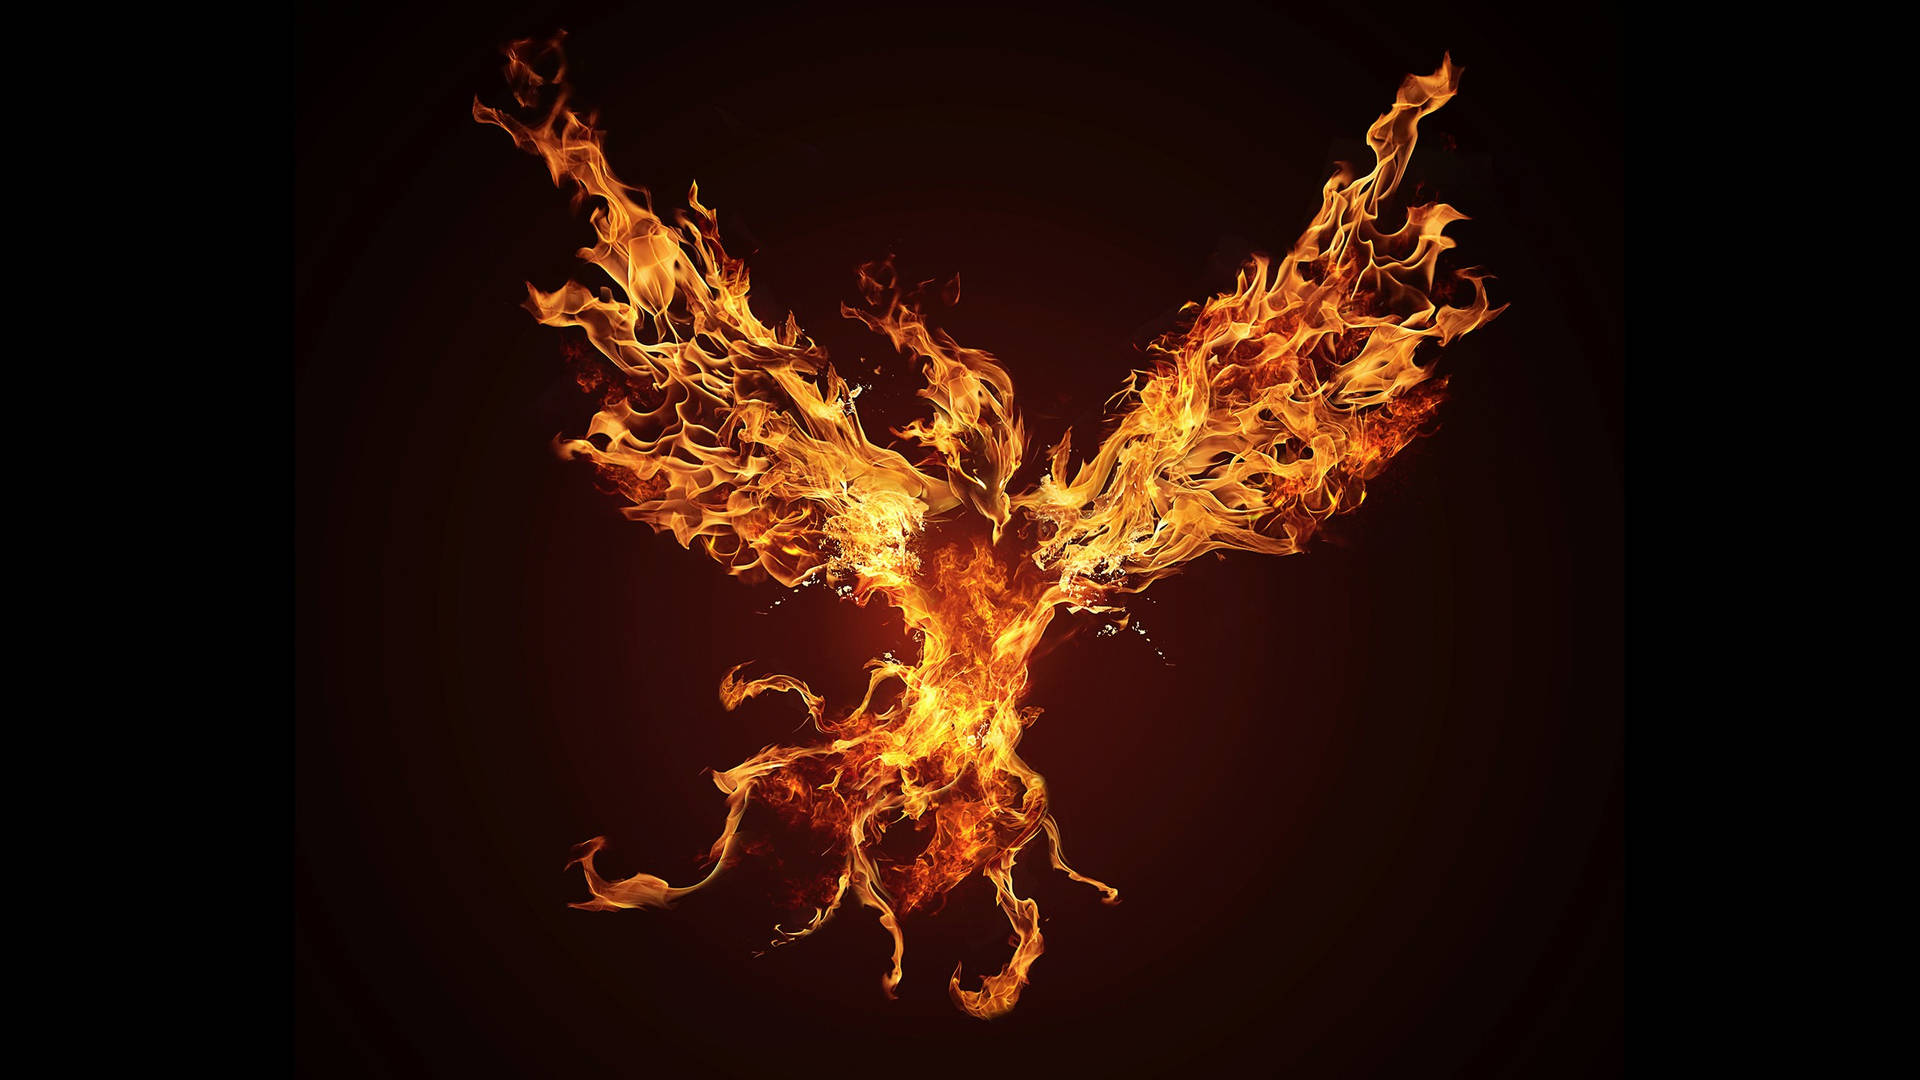 Flying Fire Phoenix Hd